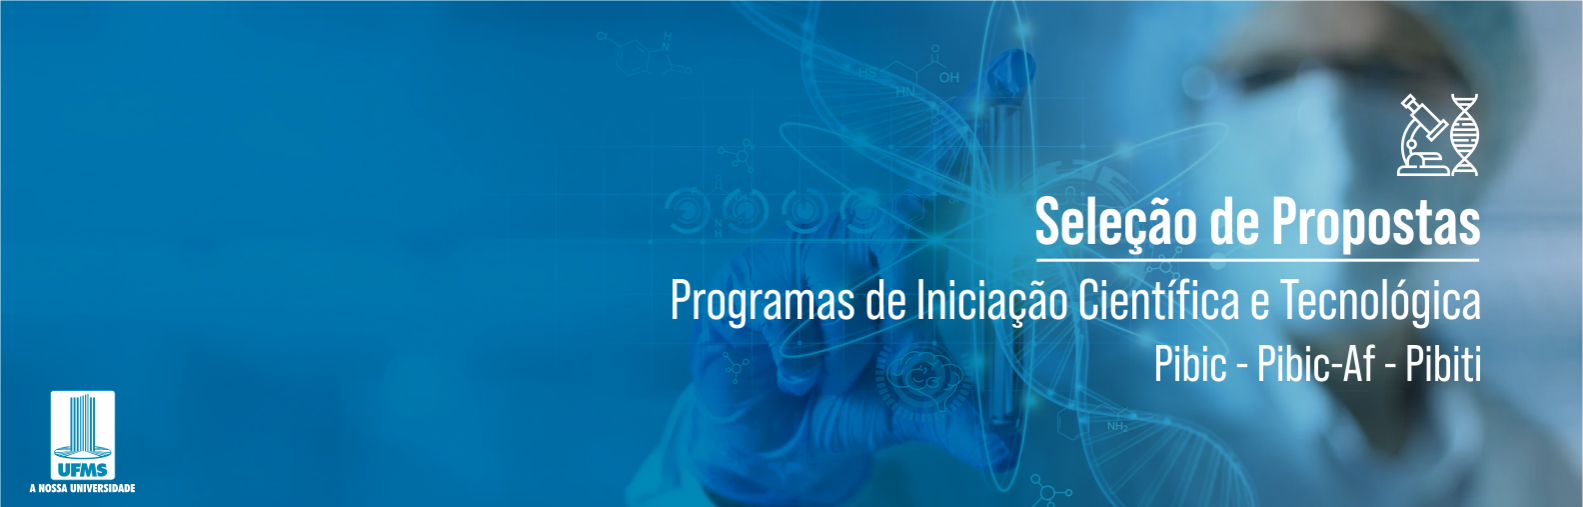 Programas de iniciação científica e tecnológica contam com R$ 2,4 milhões para bolsas